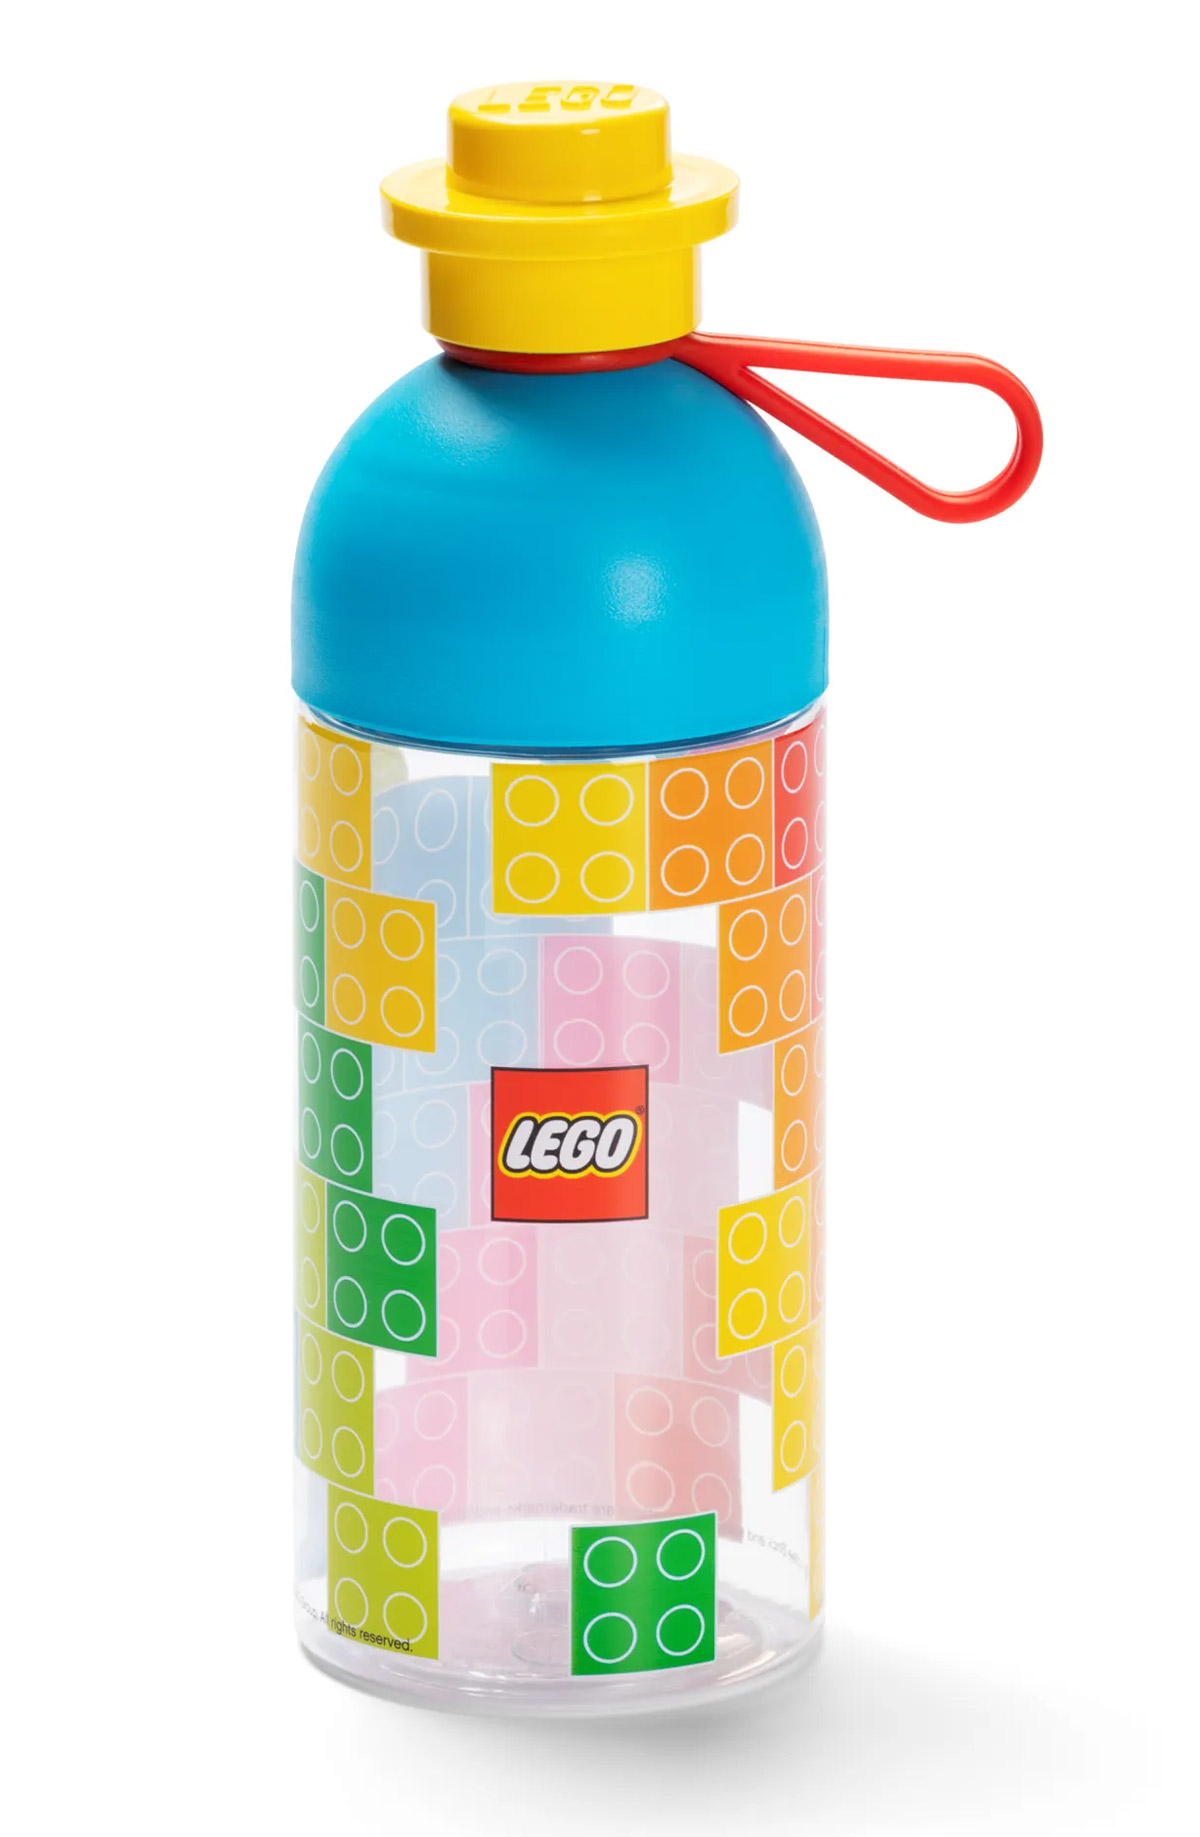 LEGO Objets divers 5007851 pas cher, Puzzle de 1 000 pièces Fleurs